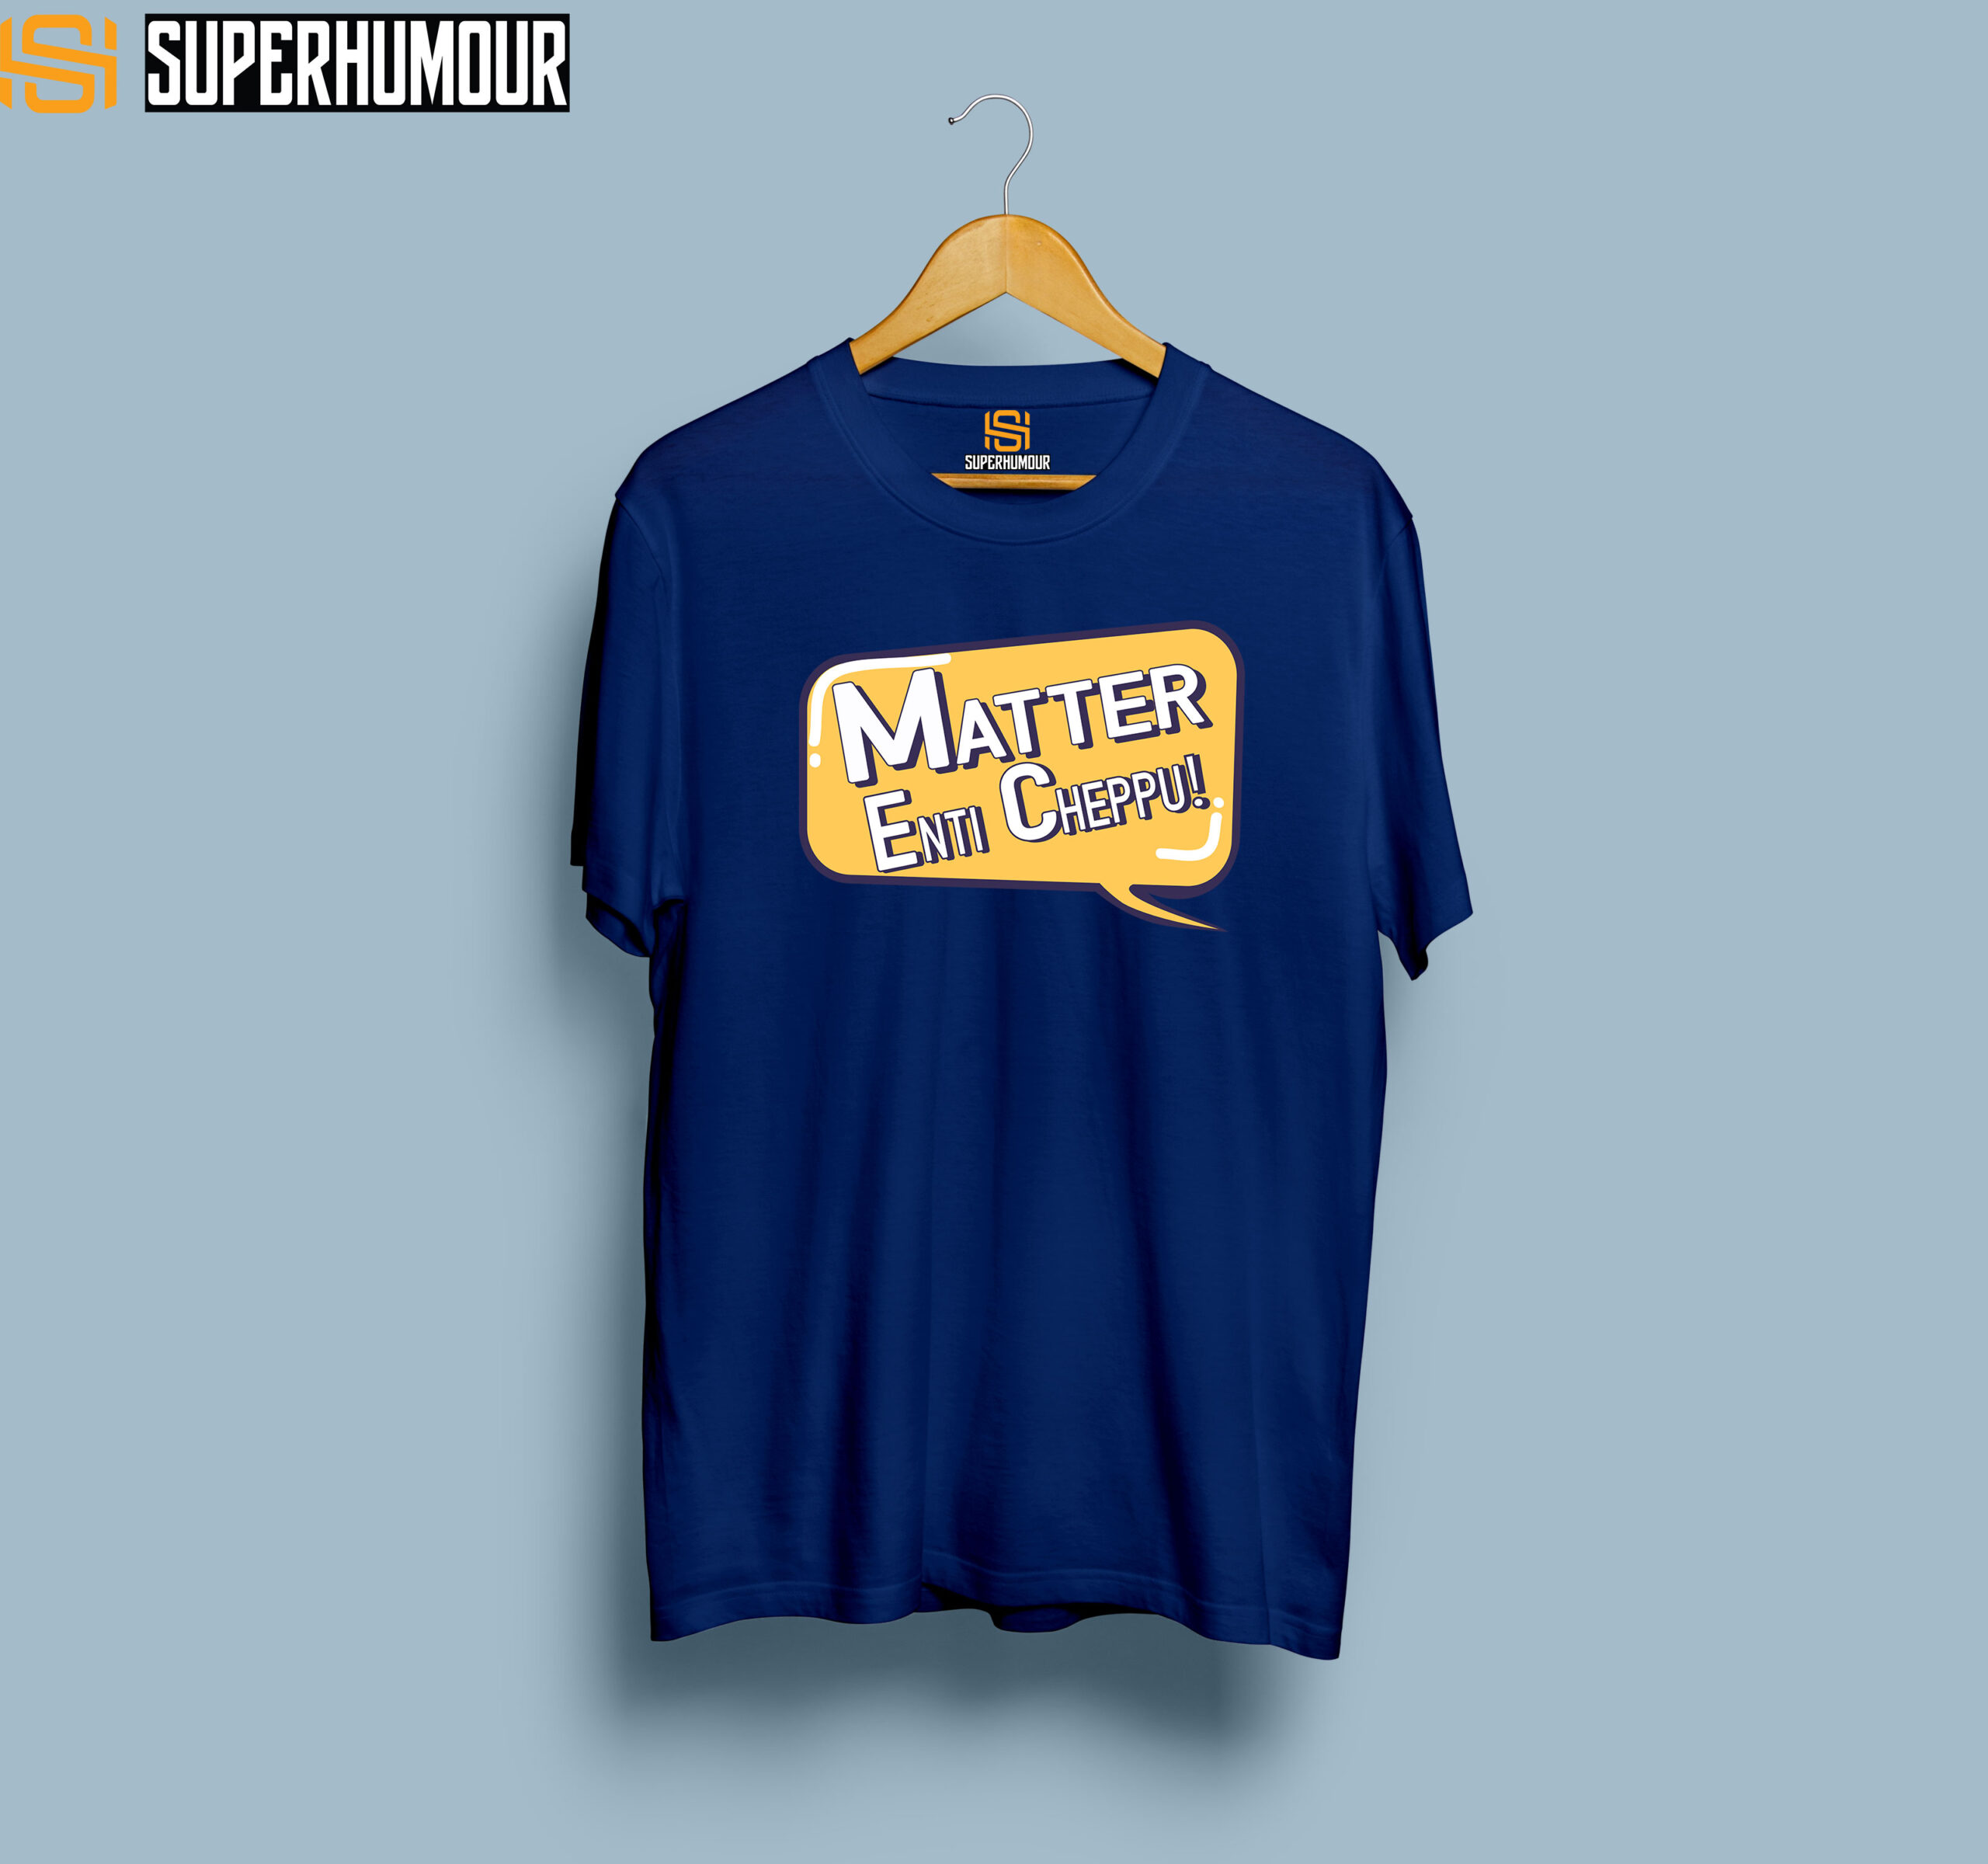 Matter Enti Cheppu - Men’s T-shirt